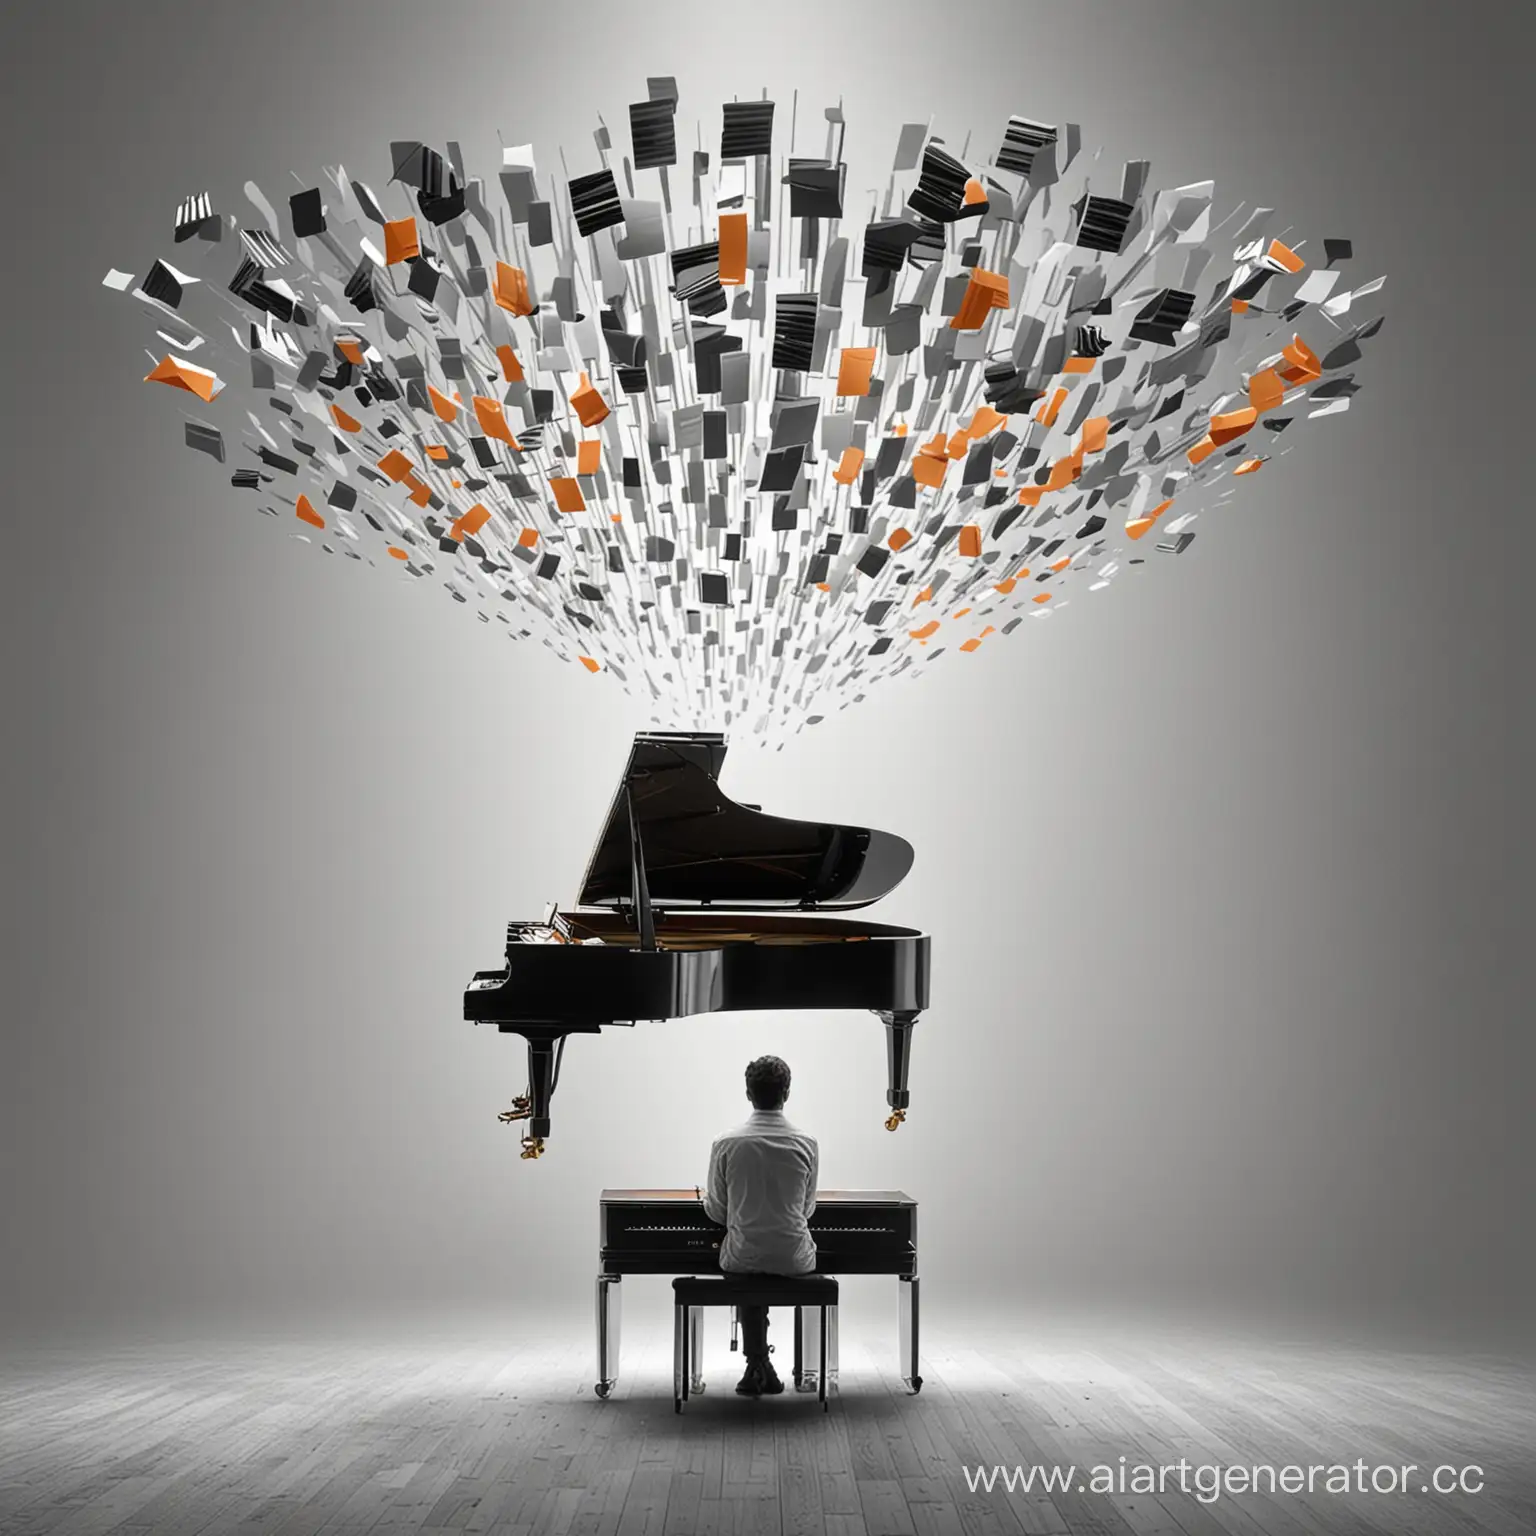 Человек в центре картинки думает и вокруг его головы летает фортепиано, рояль. Картинка в серых и оранжевых тонах